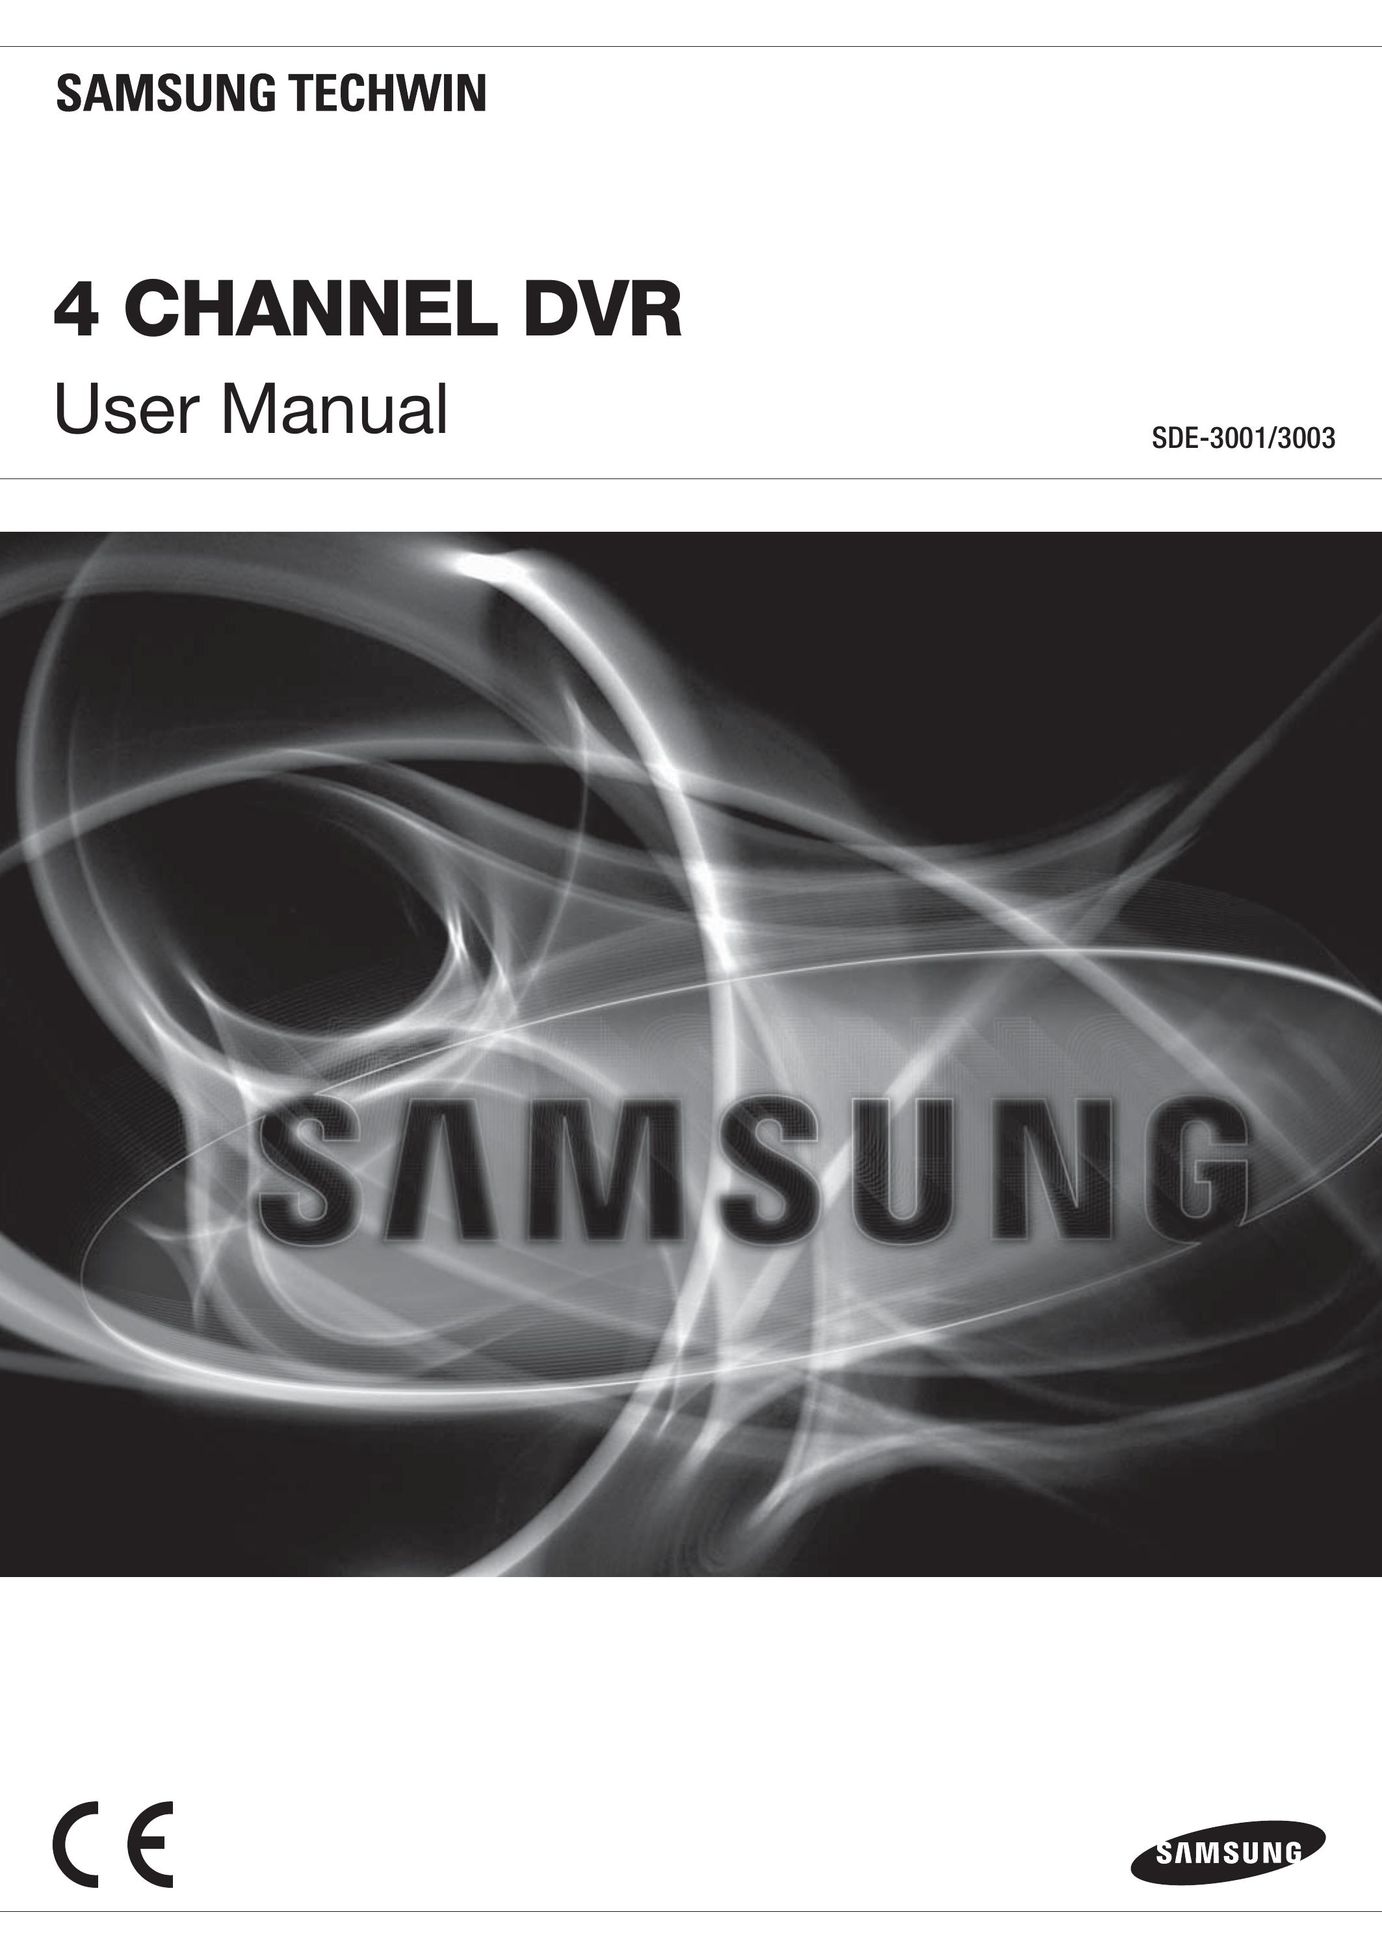 Samsung SDE-3001 DVR User Manual